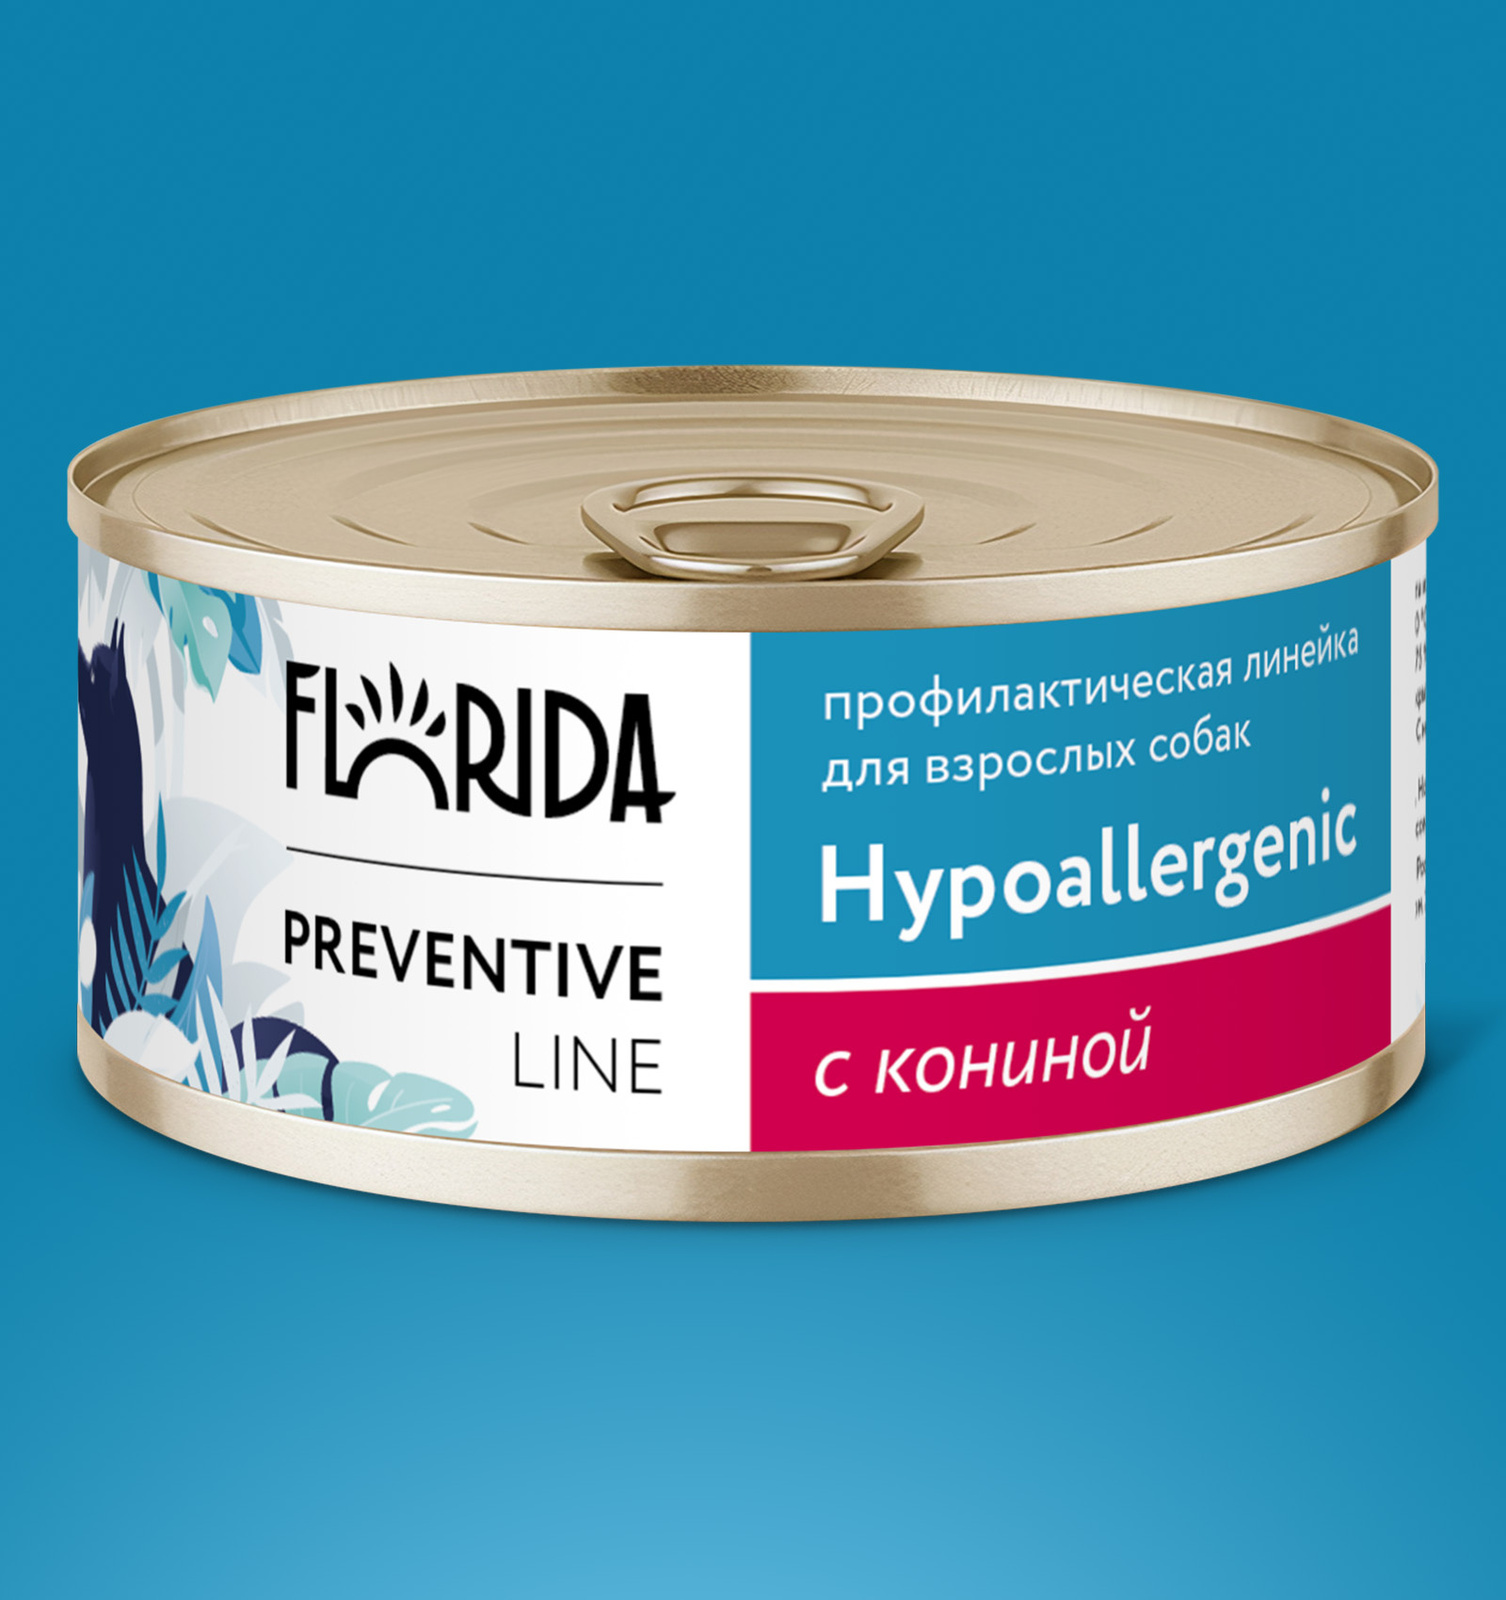 Florida Preventive Line консервы Florida Preventive Line консервы hypoallergenic для собак Гипоаллергенные с кониной (340 г)